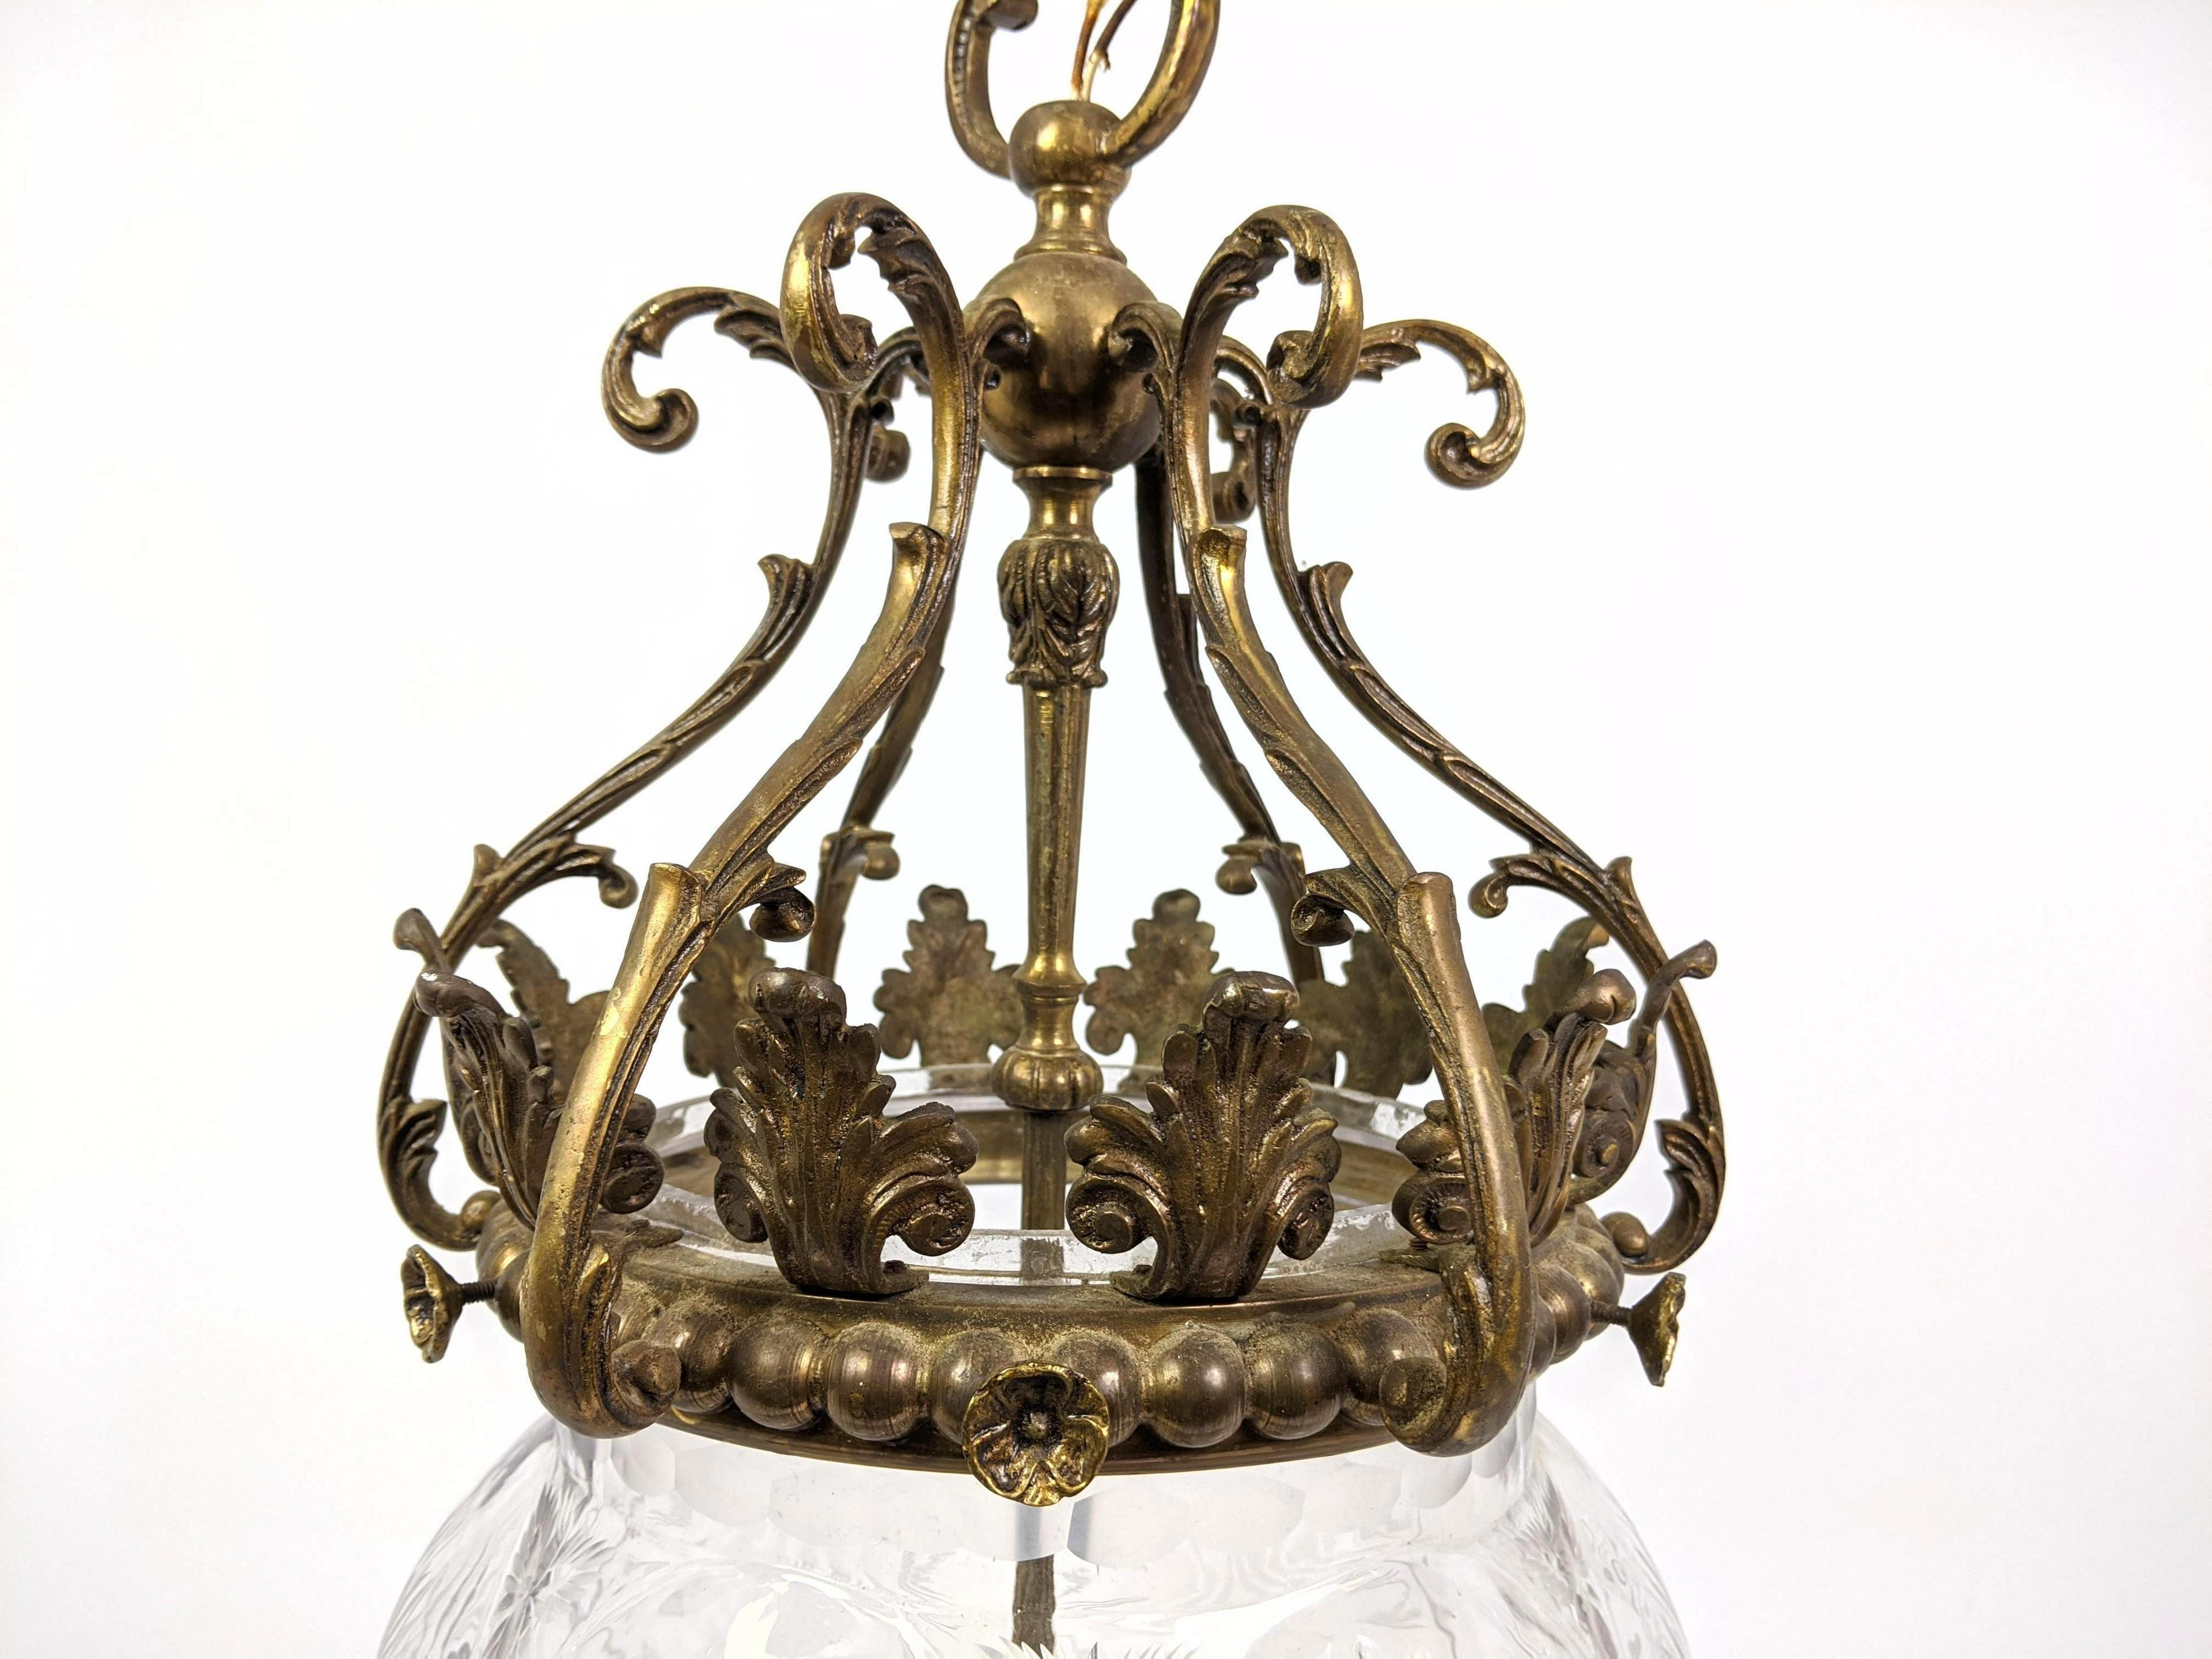 Merveilleux lustre suspendu en bronze et cristal taillé, gravé d'un motif d'étoile, reconnecté avec 3 nouvelles douilles de candélabre.

Dimensions : 27.5